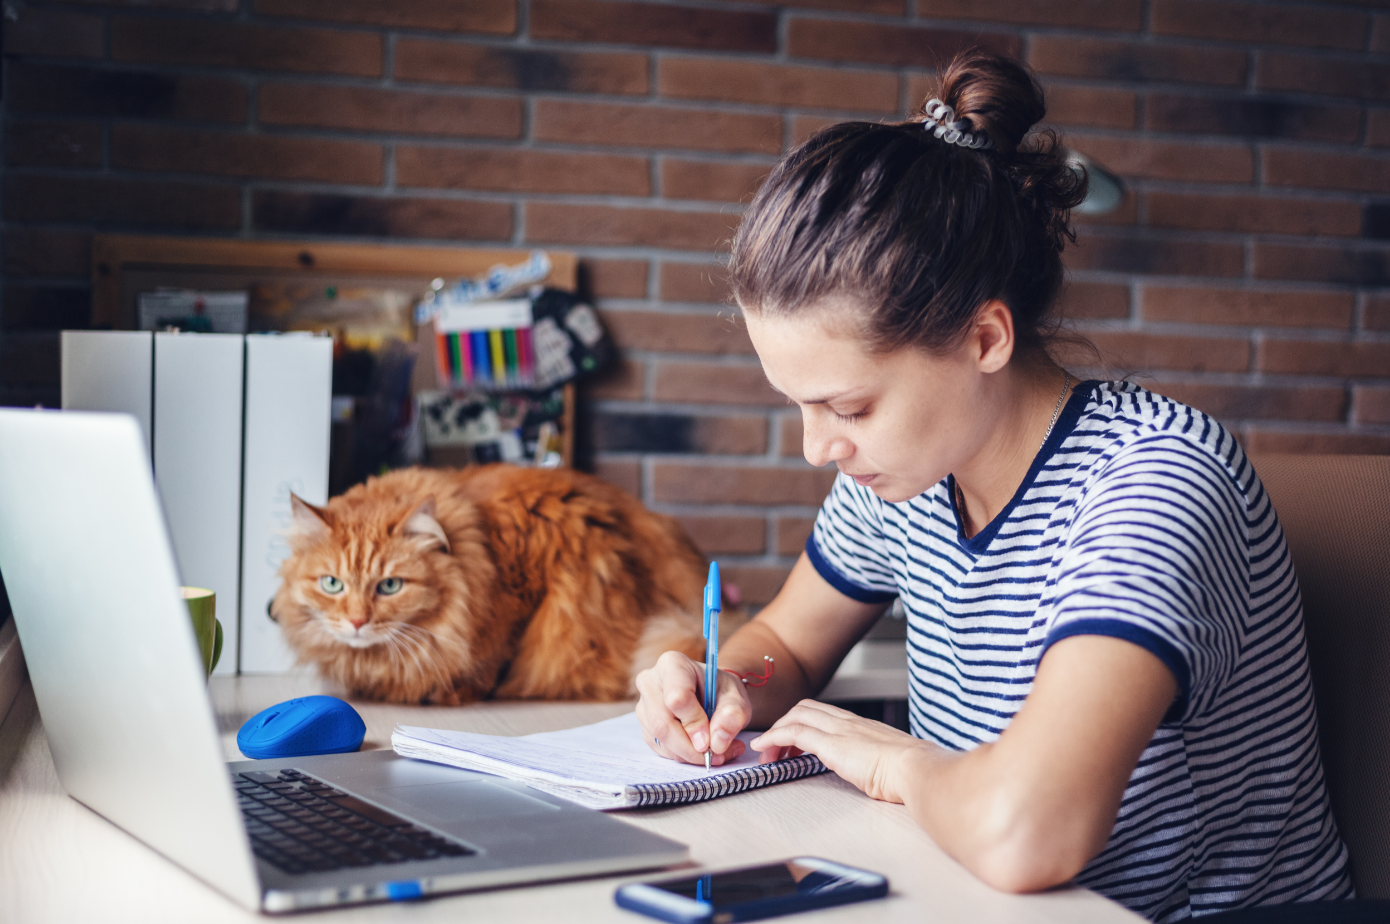 Studentin arbeitet am Laptop. Ihre Katze sitzt auf dem Tisch neben dem Laptop.